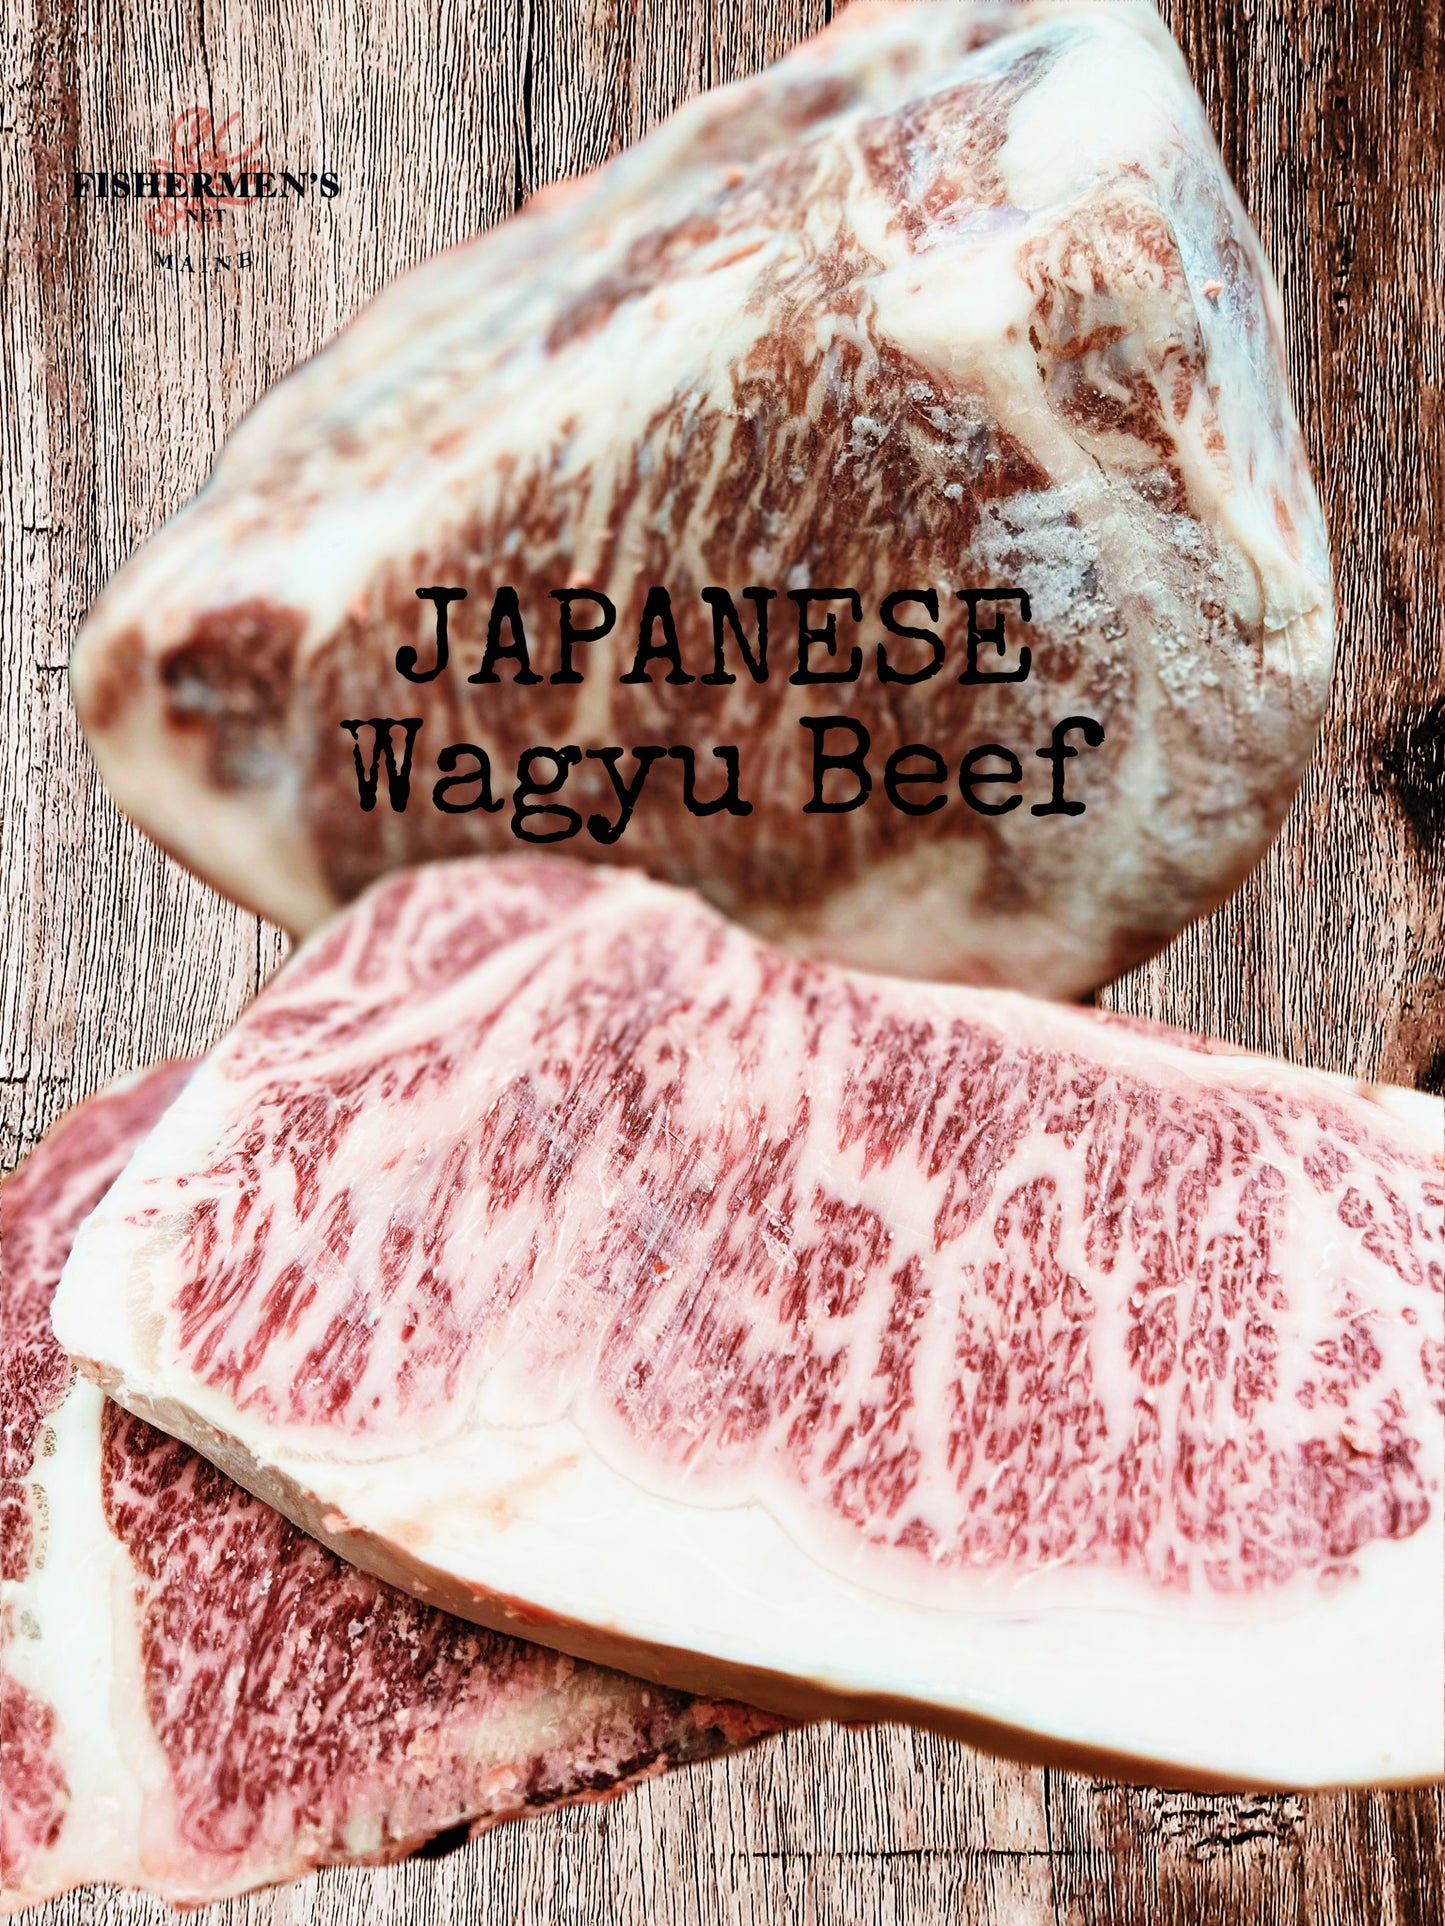 Japanese A5 Wagyu Beef - Miyazaki Beef - Strip Loin